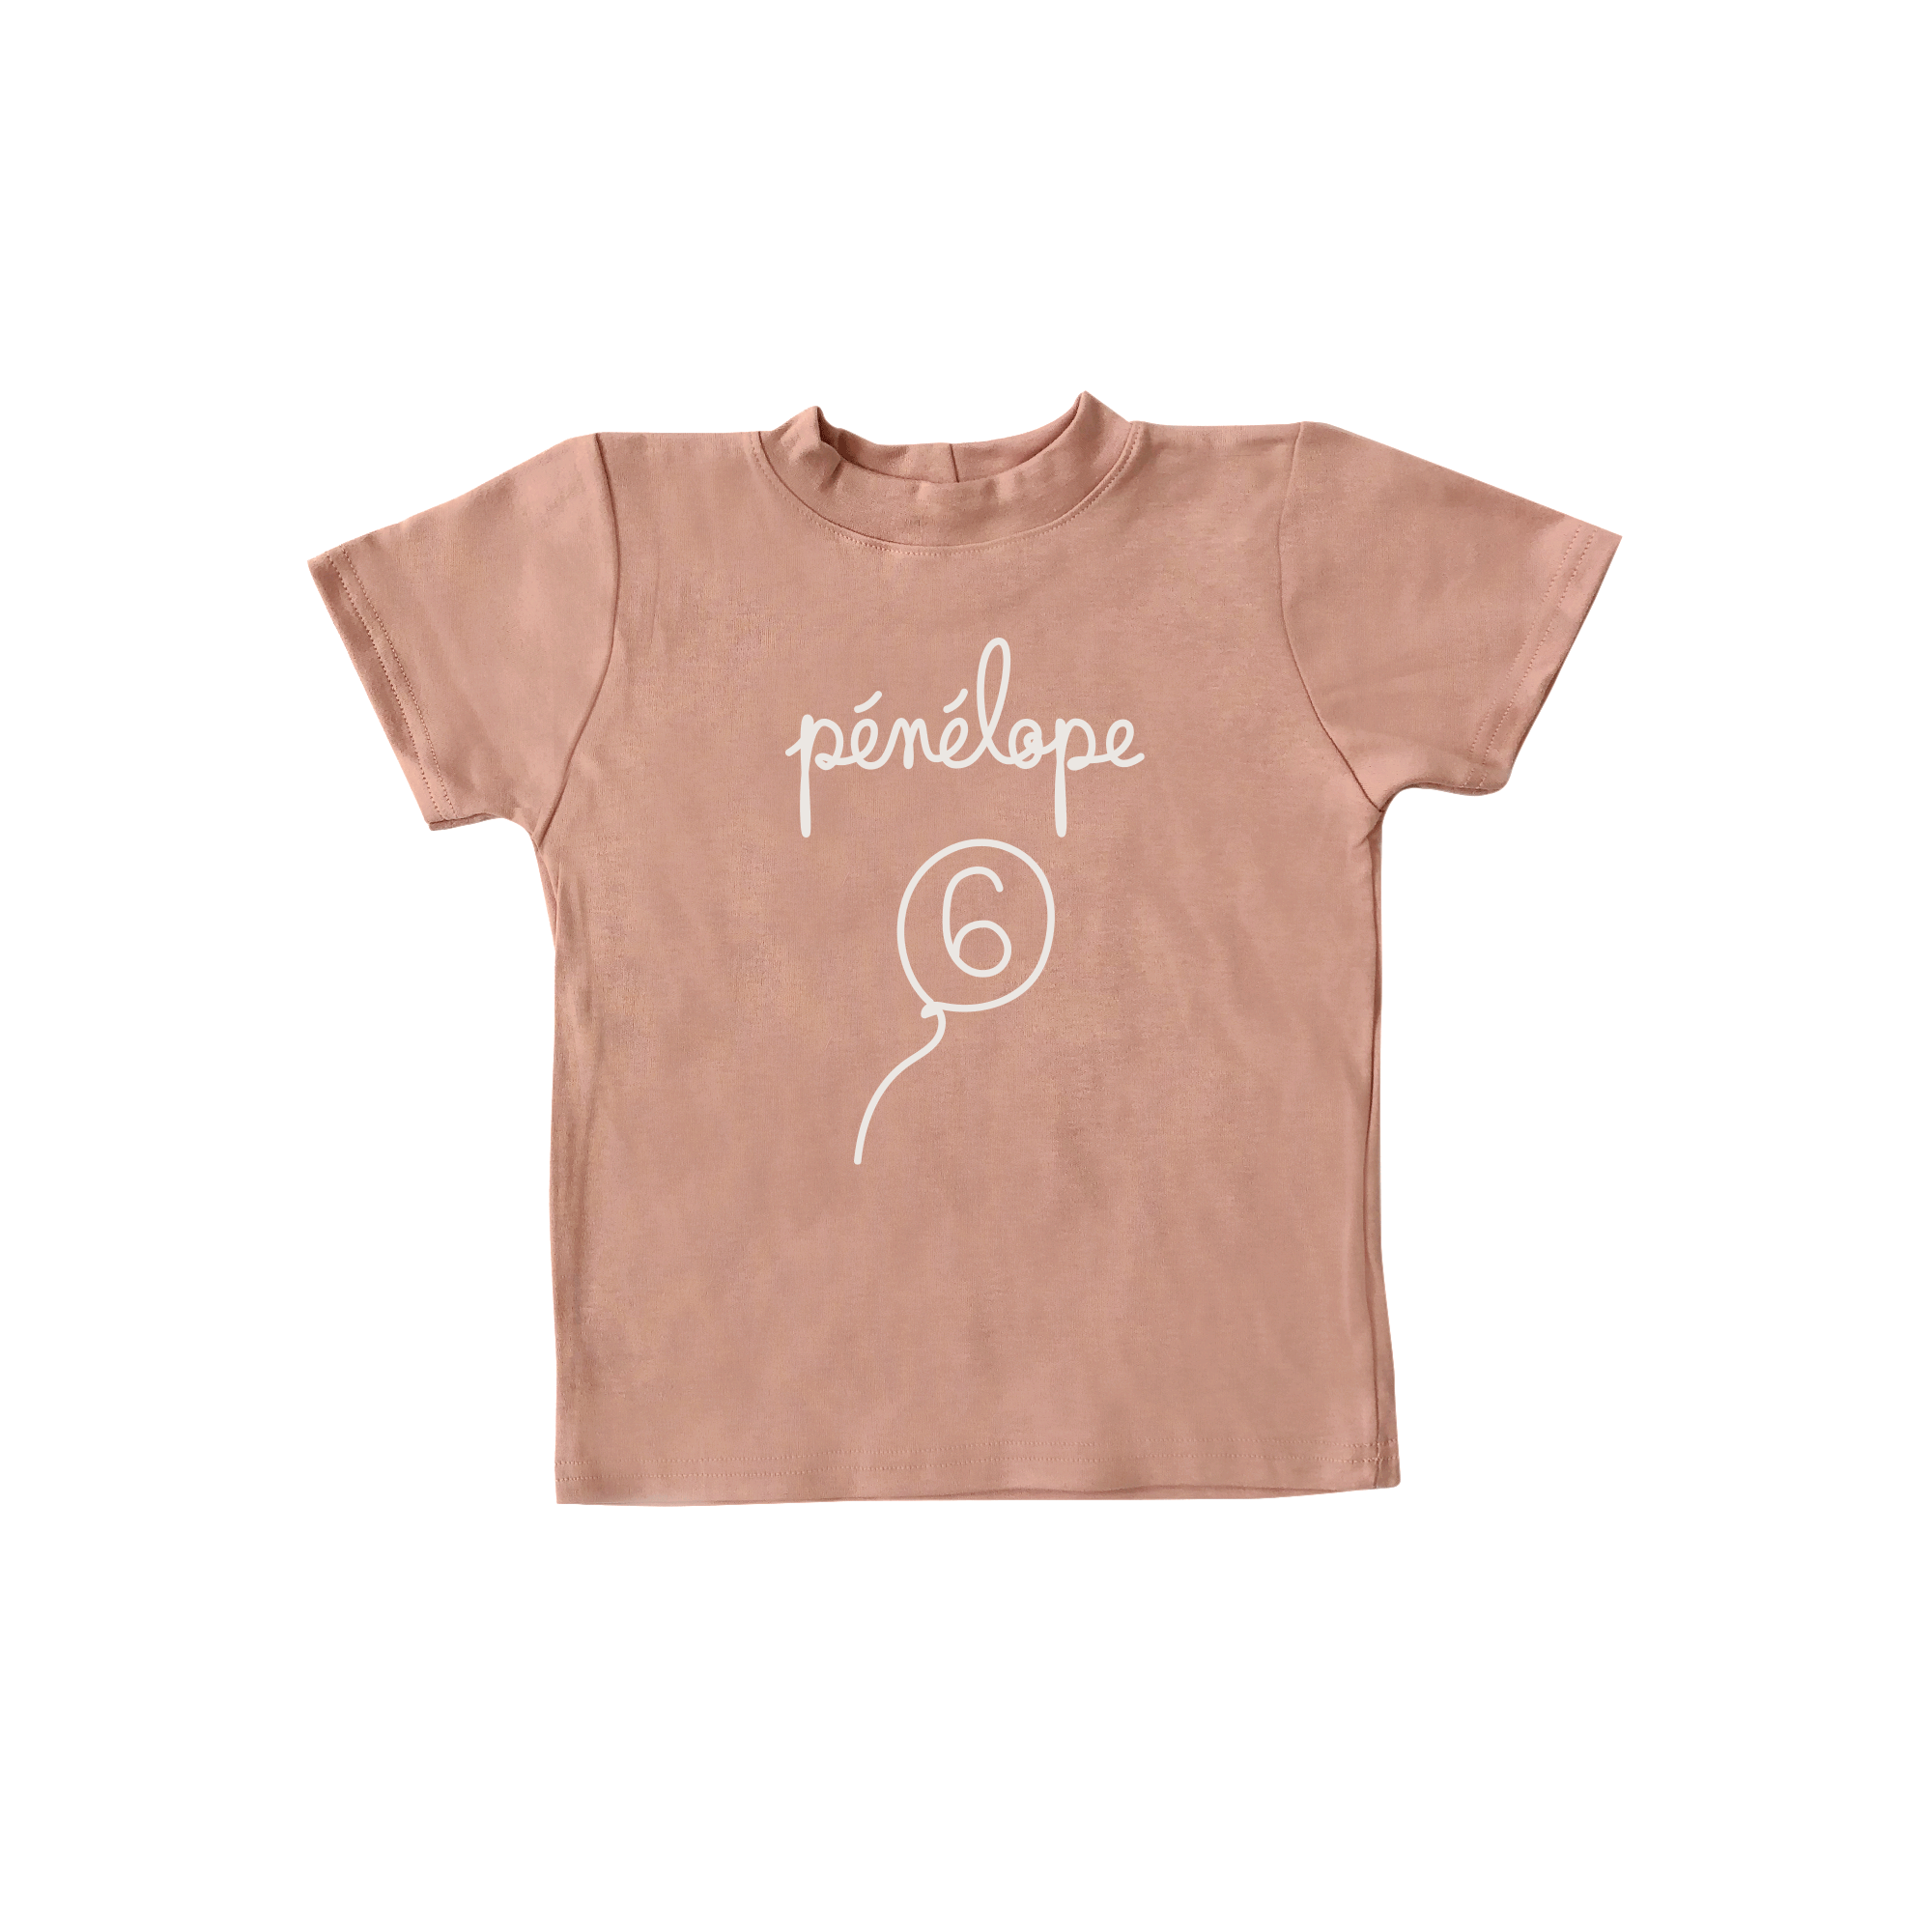 T-shirt ANNIVERSAIRE 6 ans, personnalisé - rose blush à manches courtes